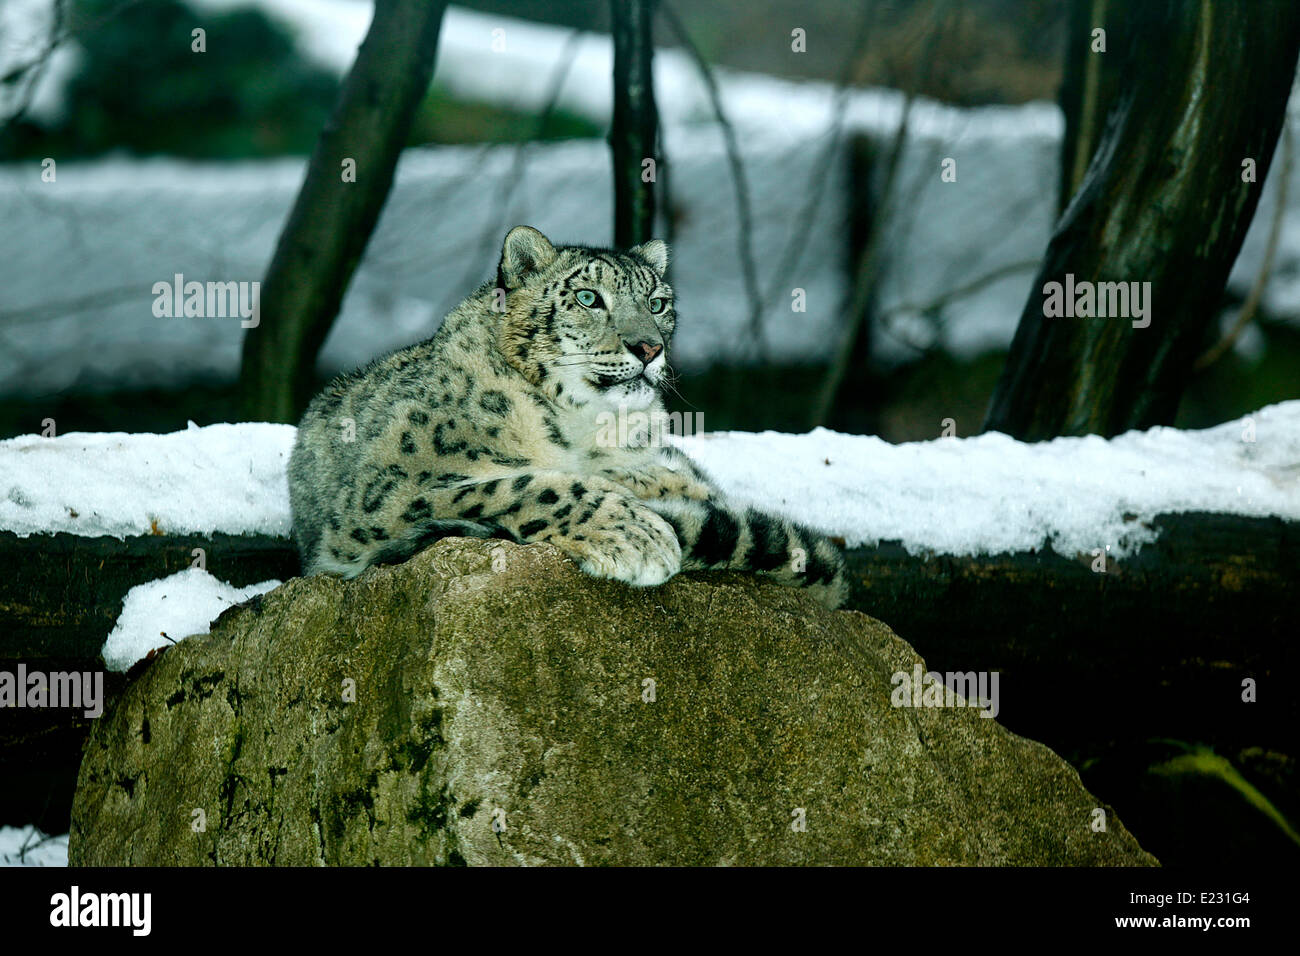 Léopard des neiges (Uncia uncia) dans un habitat neigeux Banque D'Images